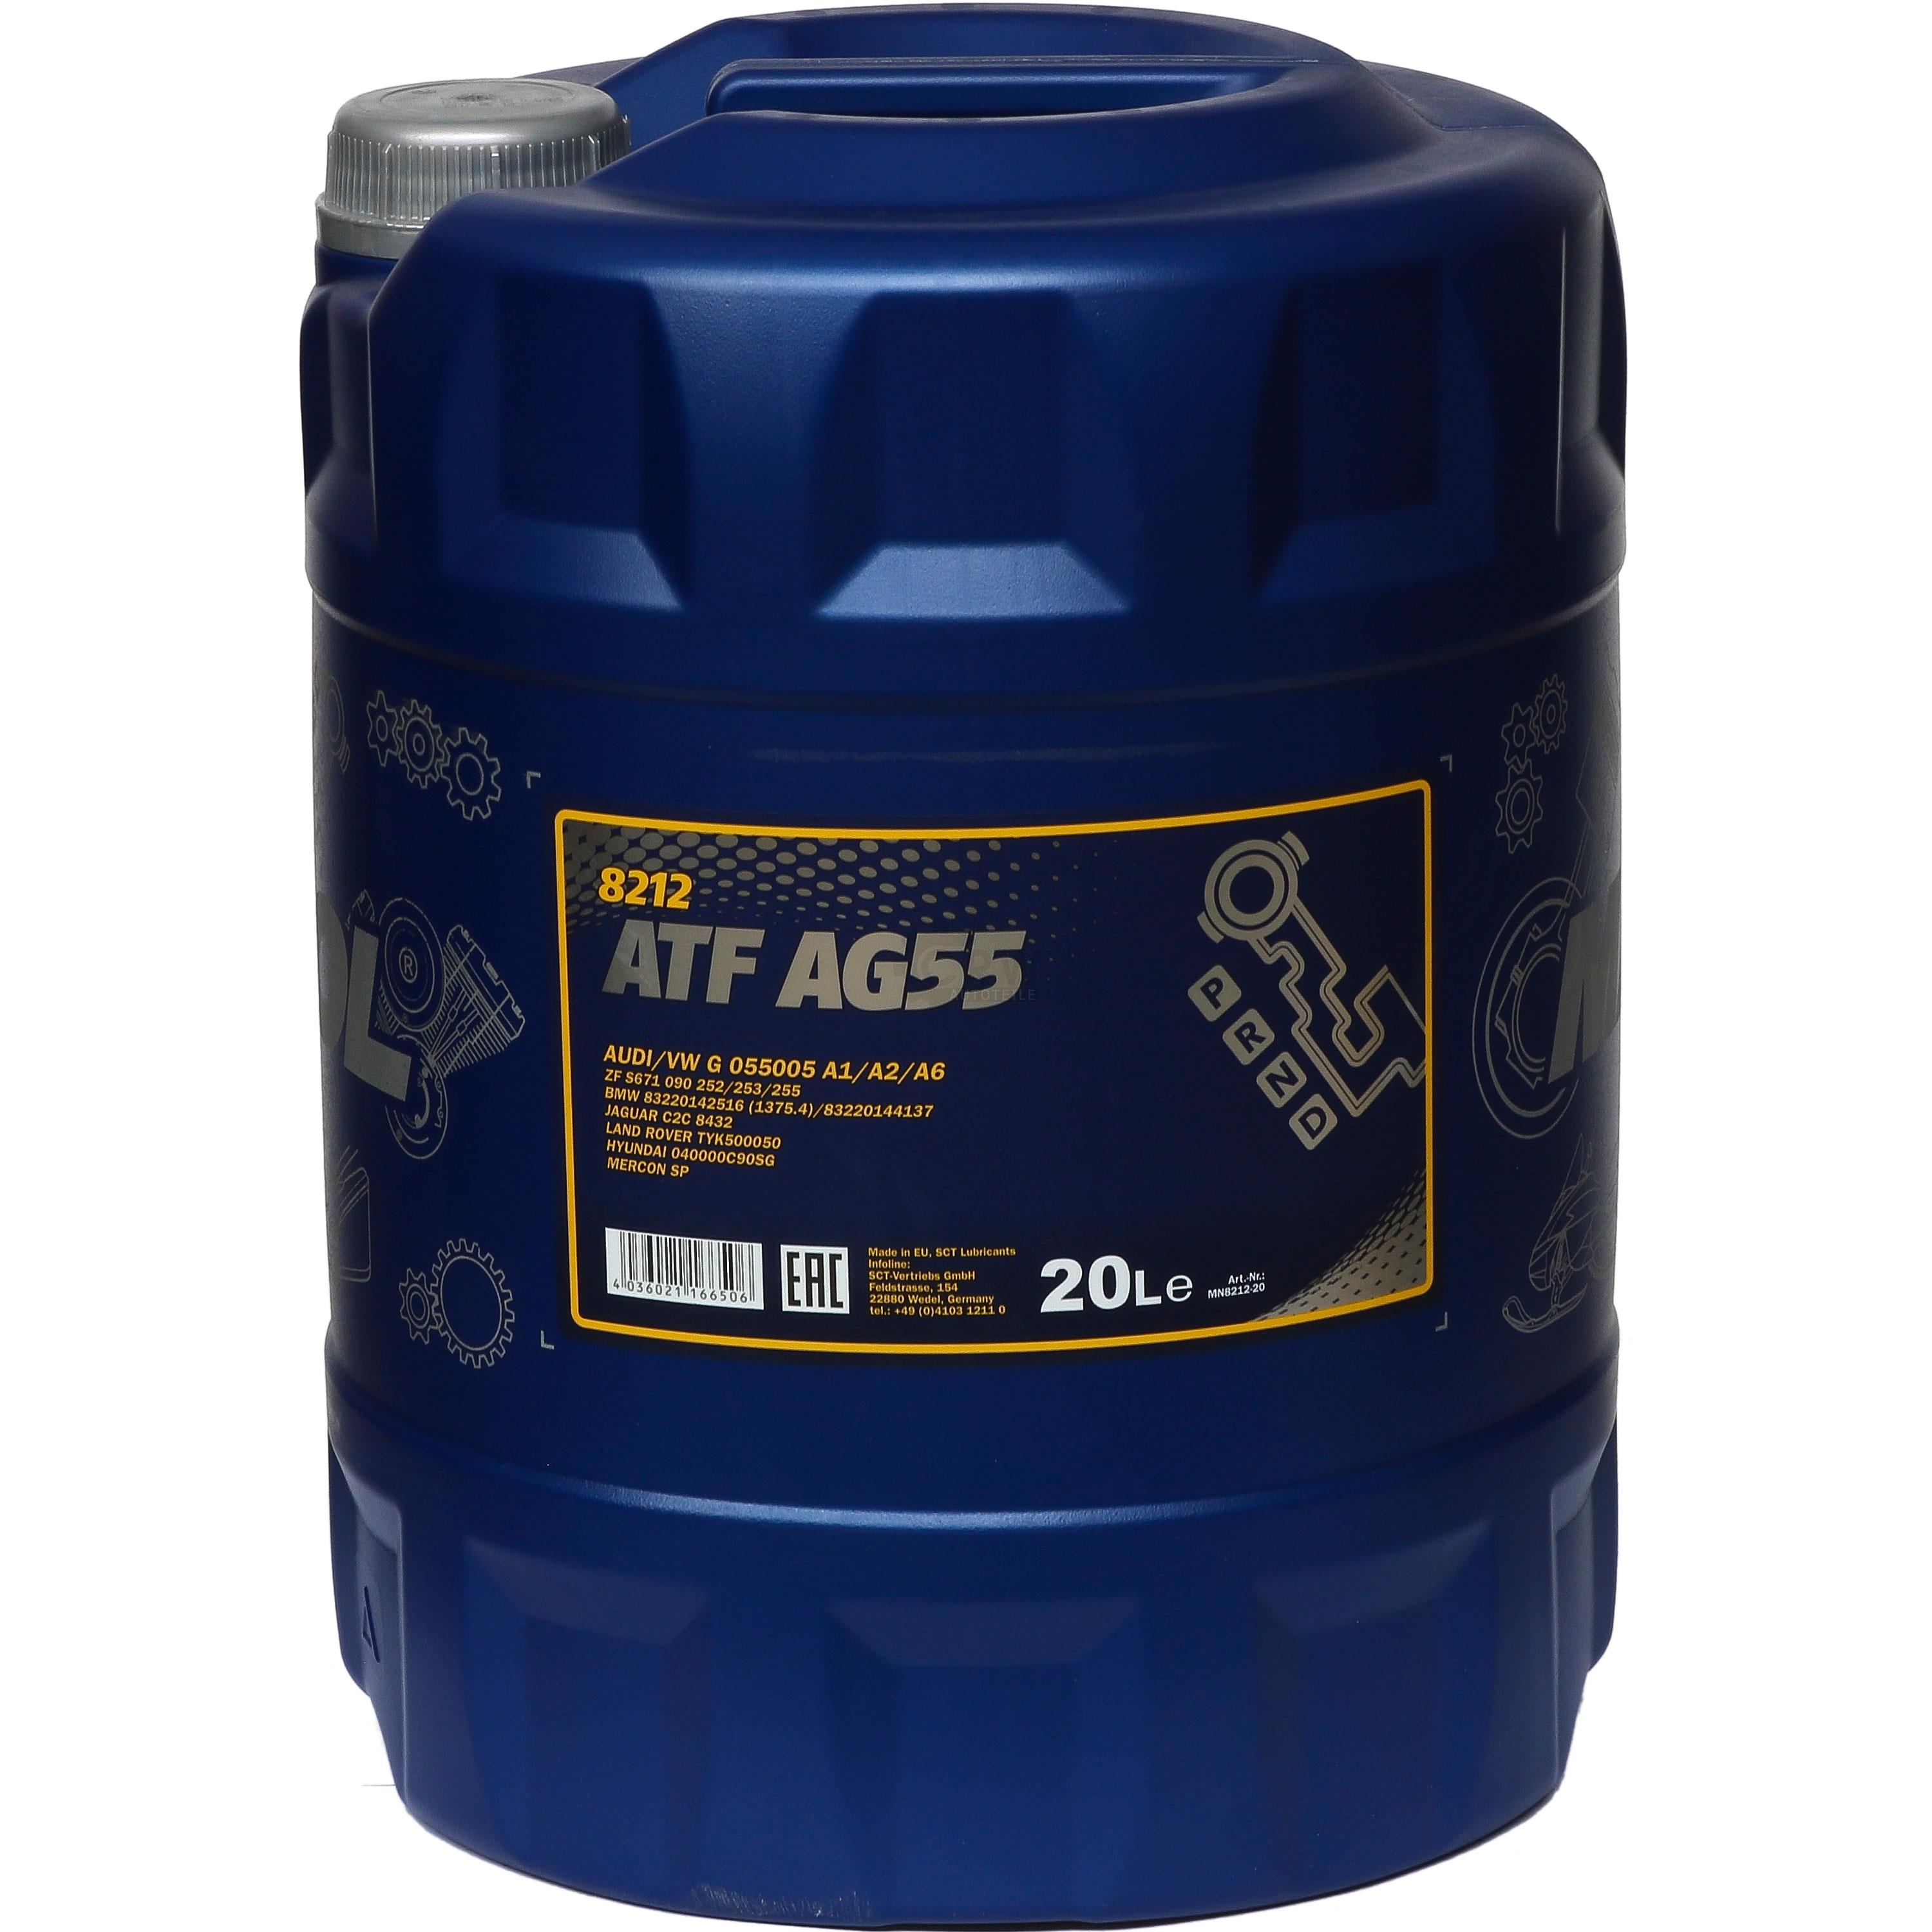 20 Liter MANNOL Hydrauliköl ATF AG55 Hydraulic Fluid Automatikgetriebeöl Gear